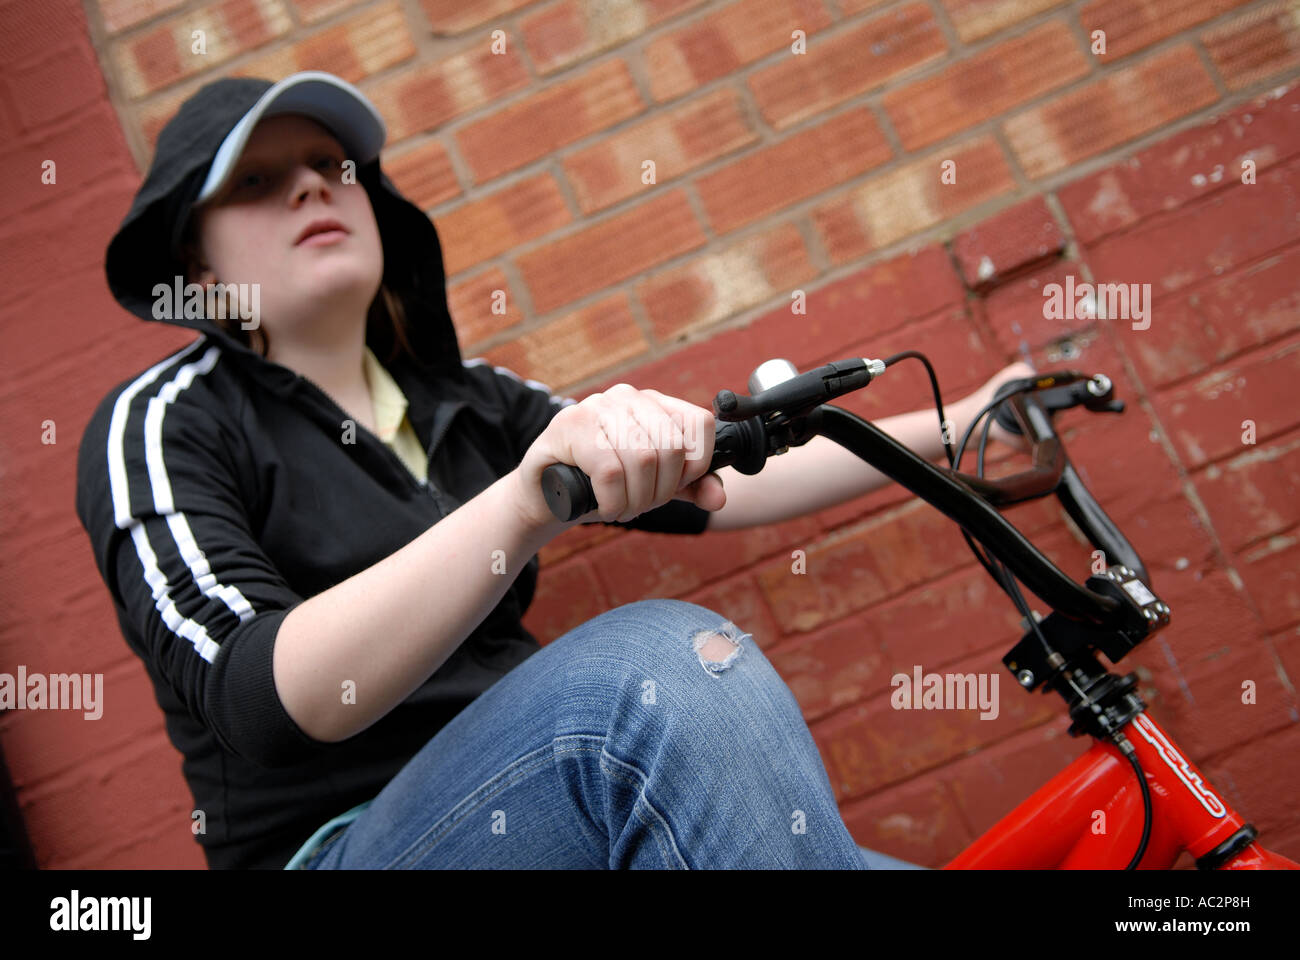 Female Teenager on bmx. Stock Photo